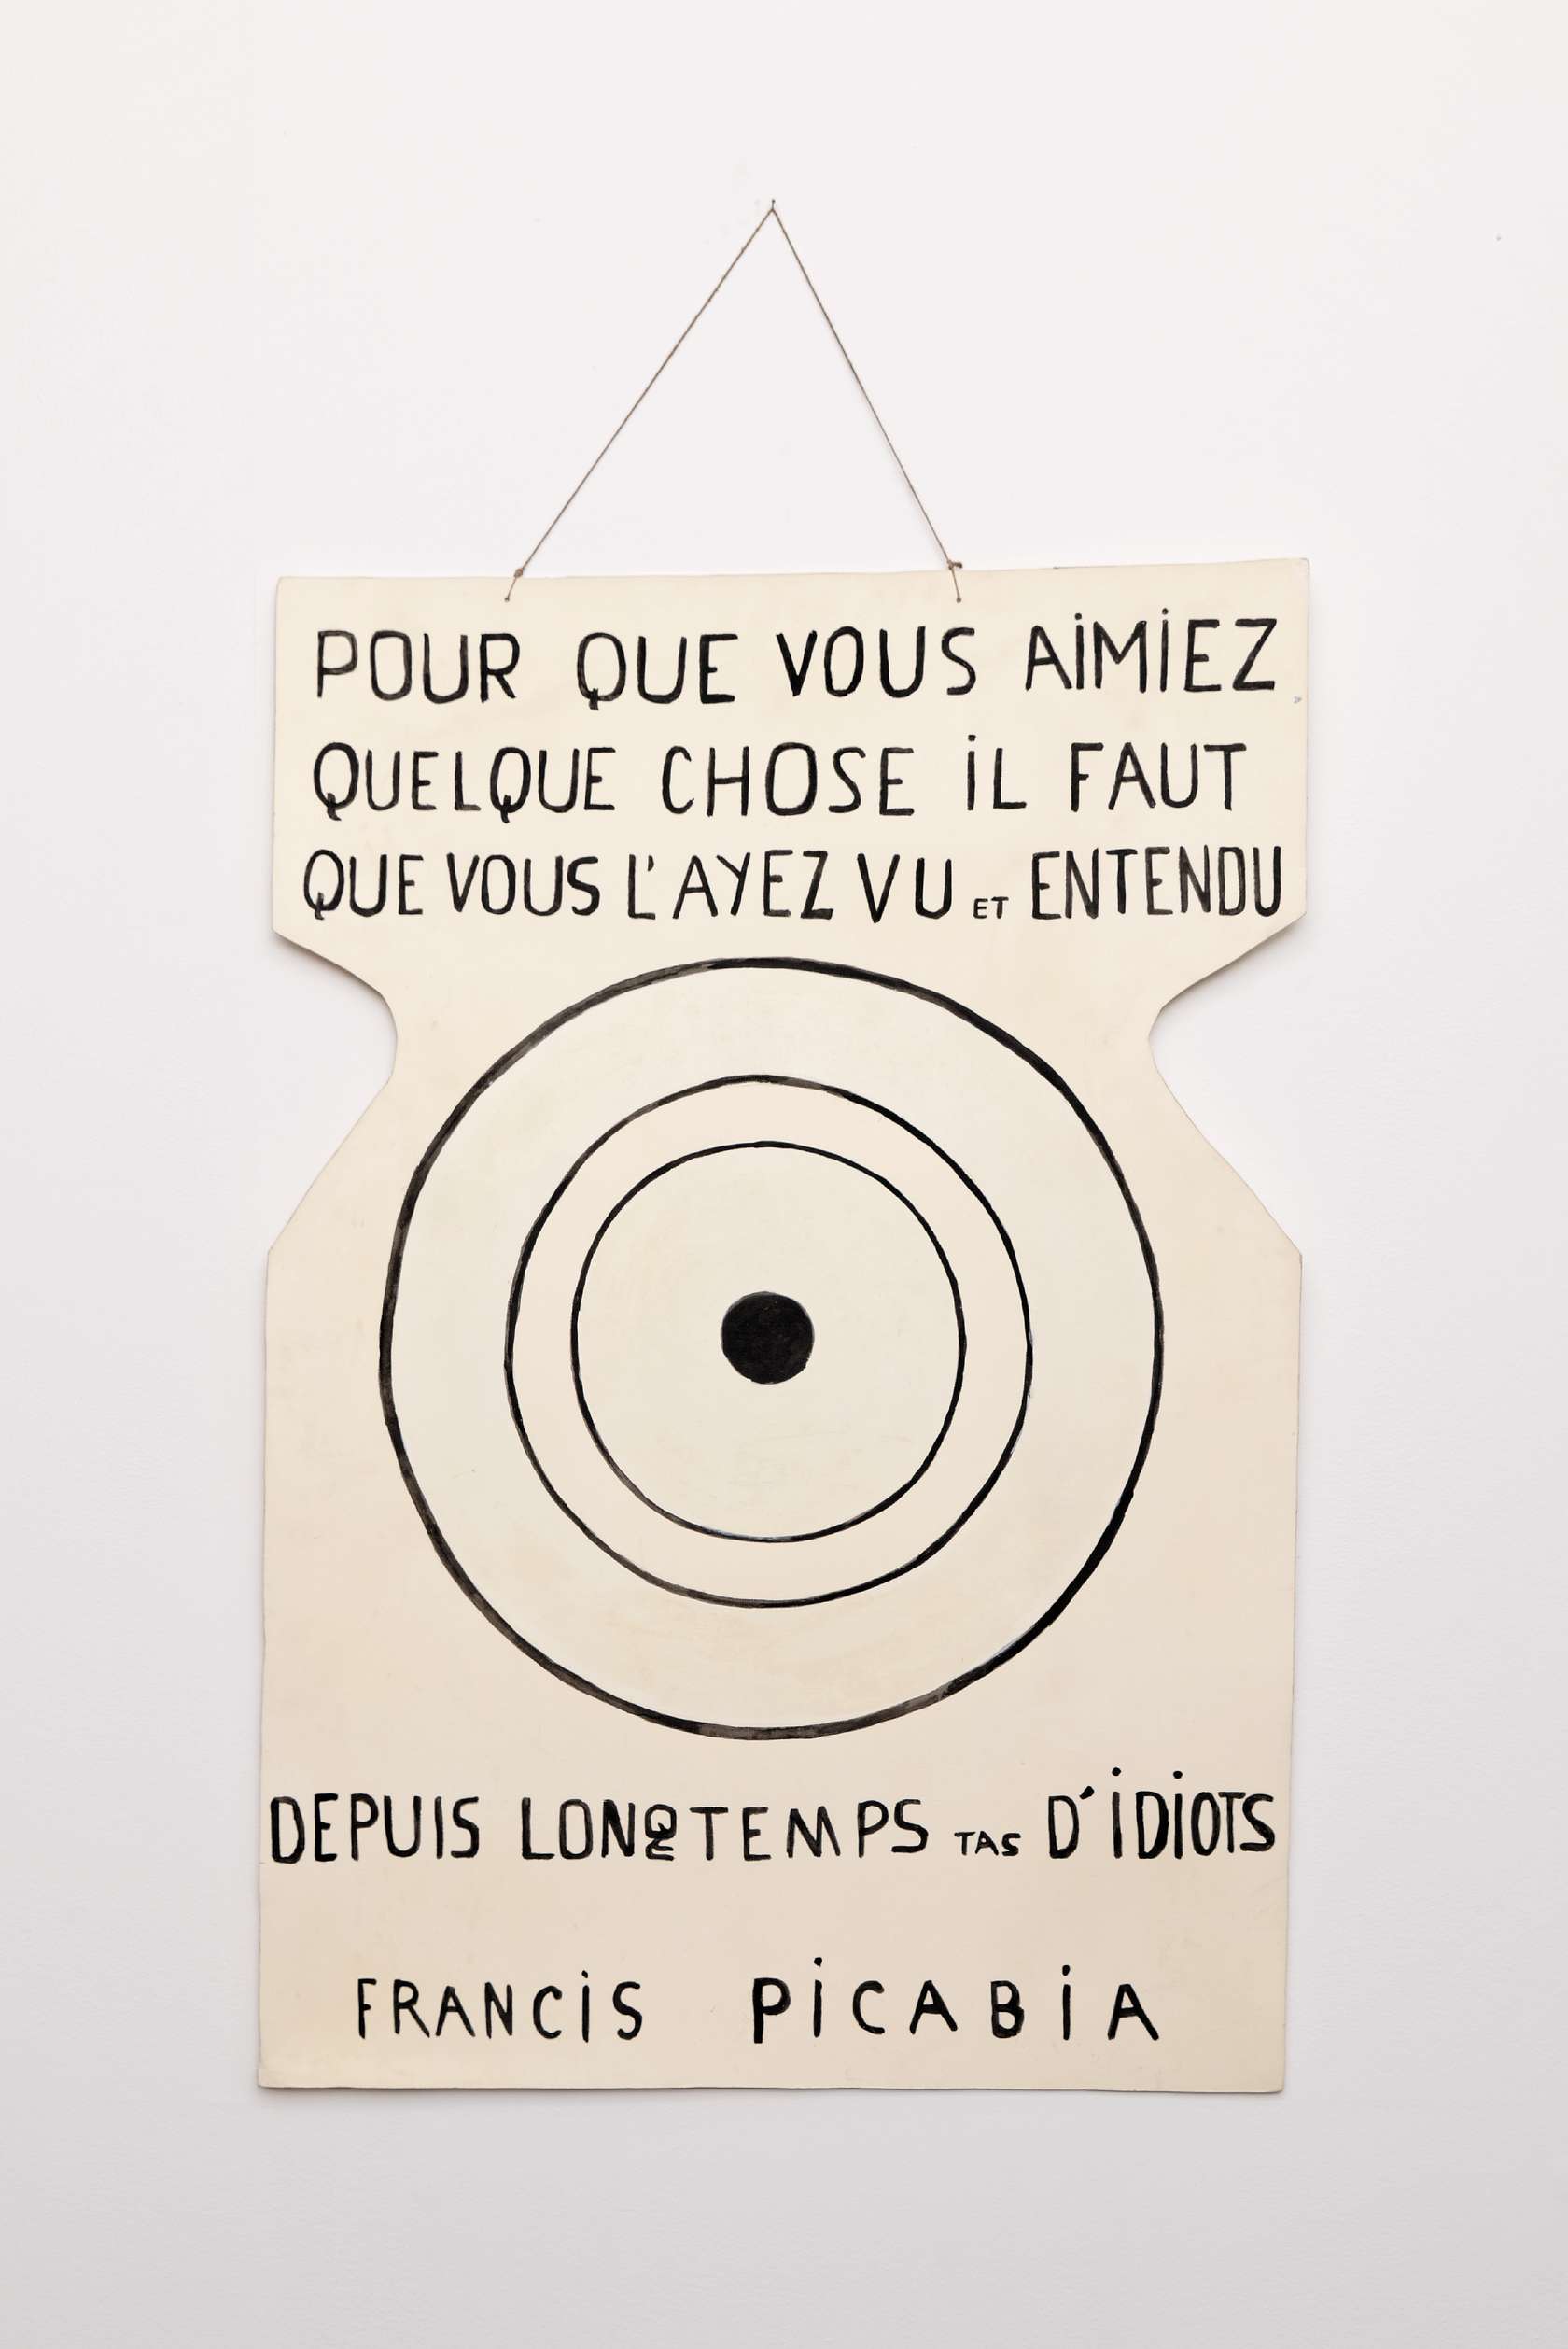 Pancarte de Francis Picabia "portée" par André Breton à une manifestation Dada du 27 mars 1920, rue de Clichy, Paris, Maison, de l'œuvre